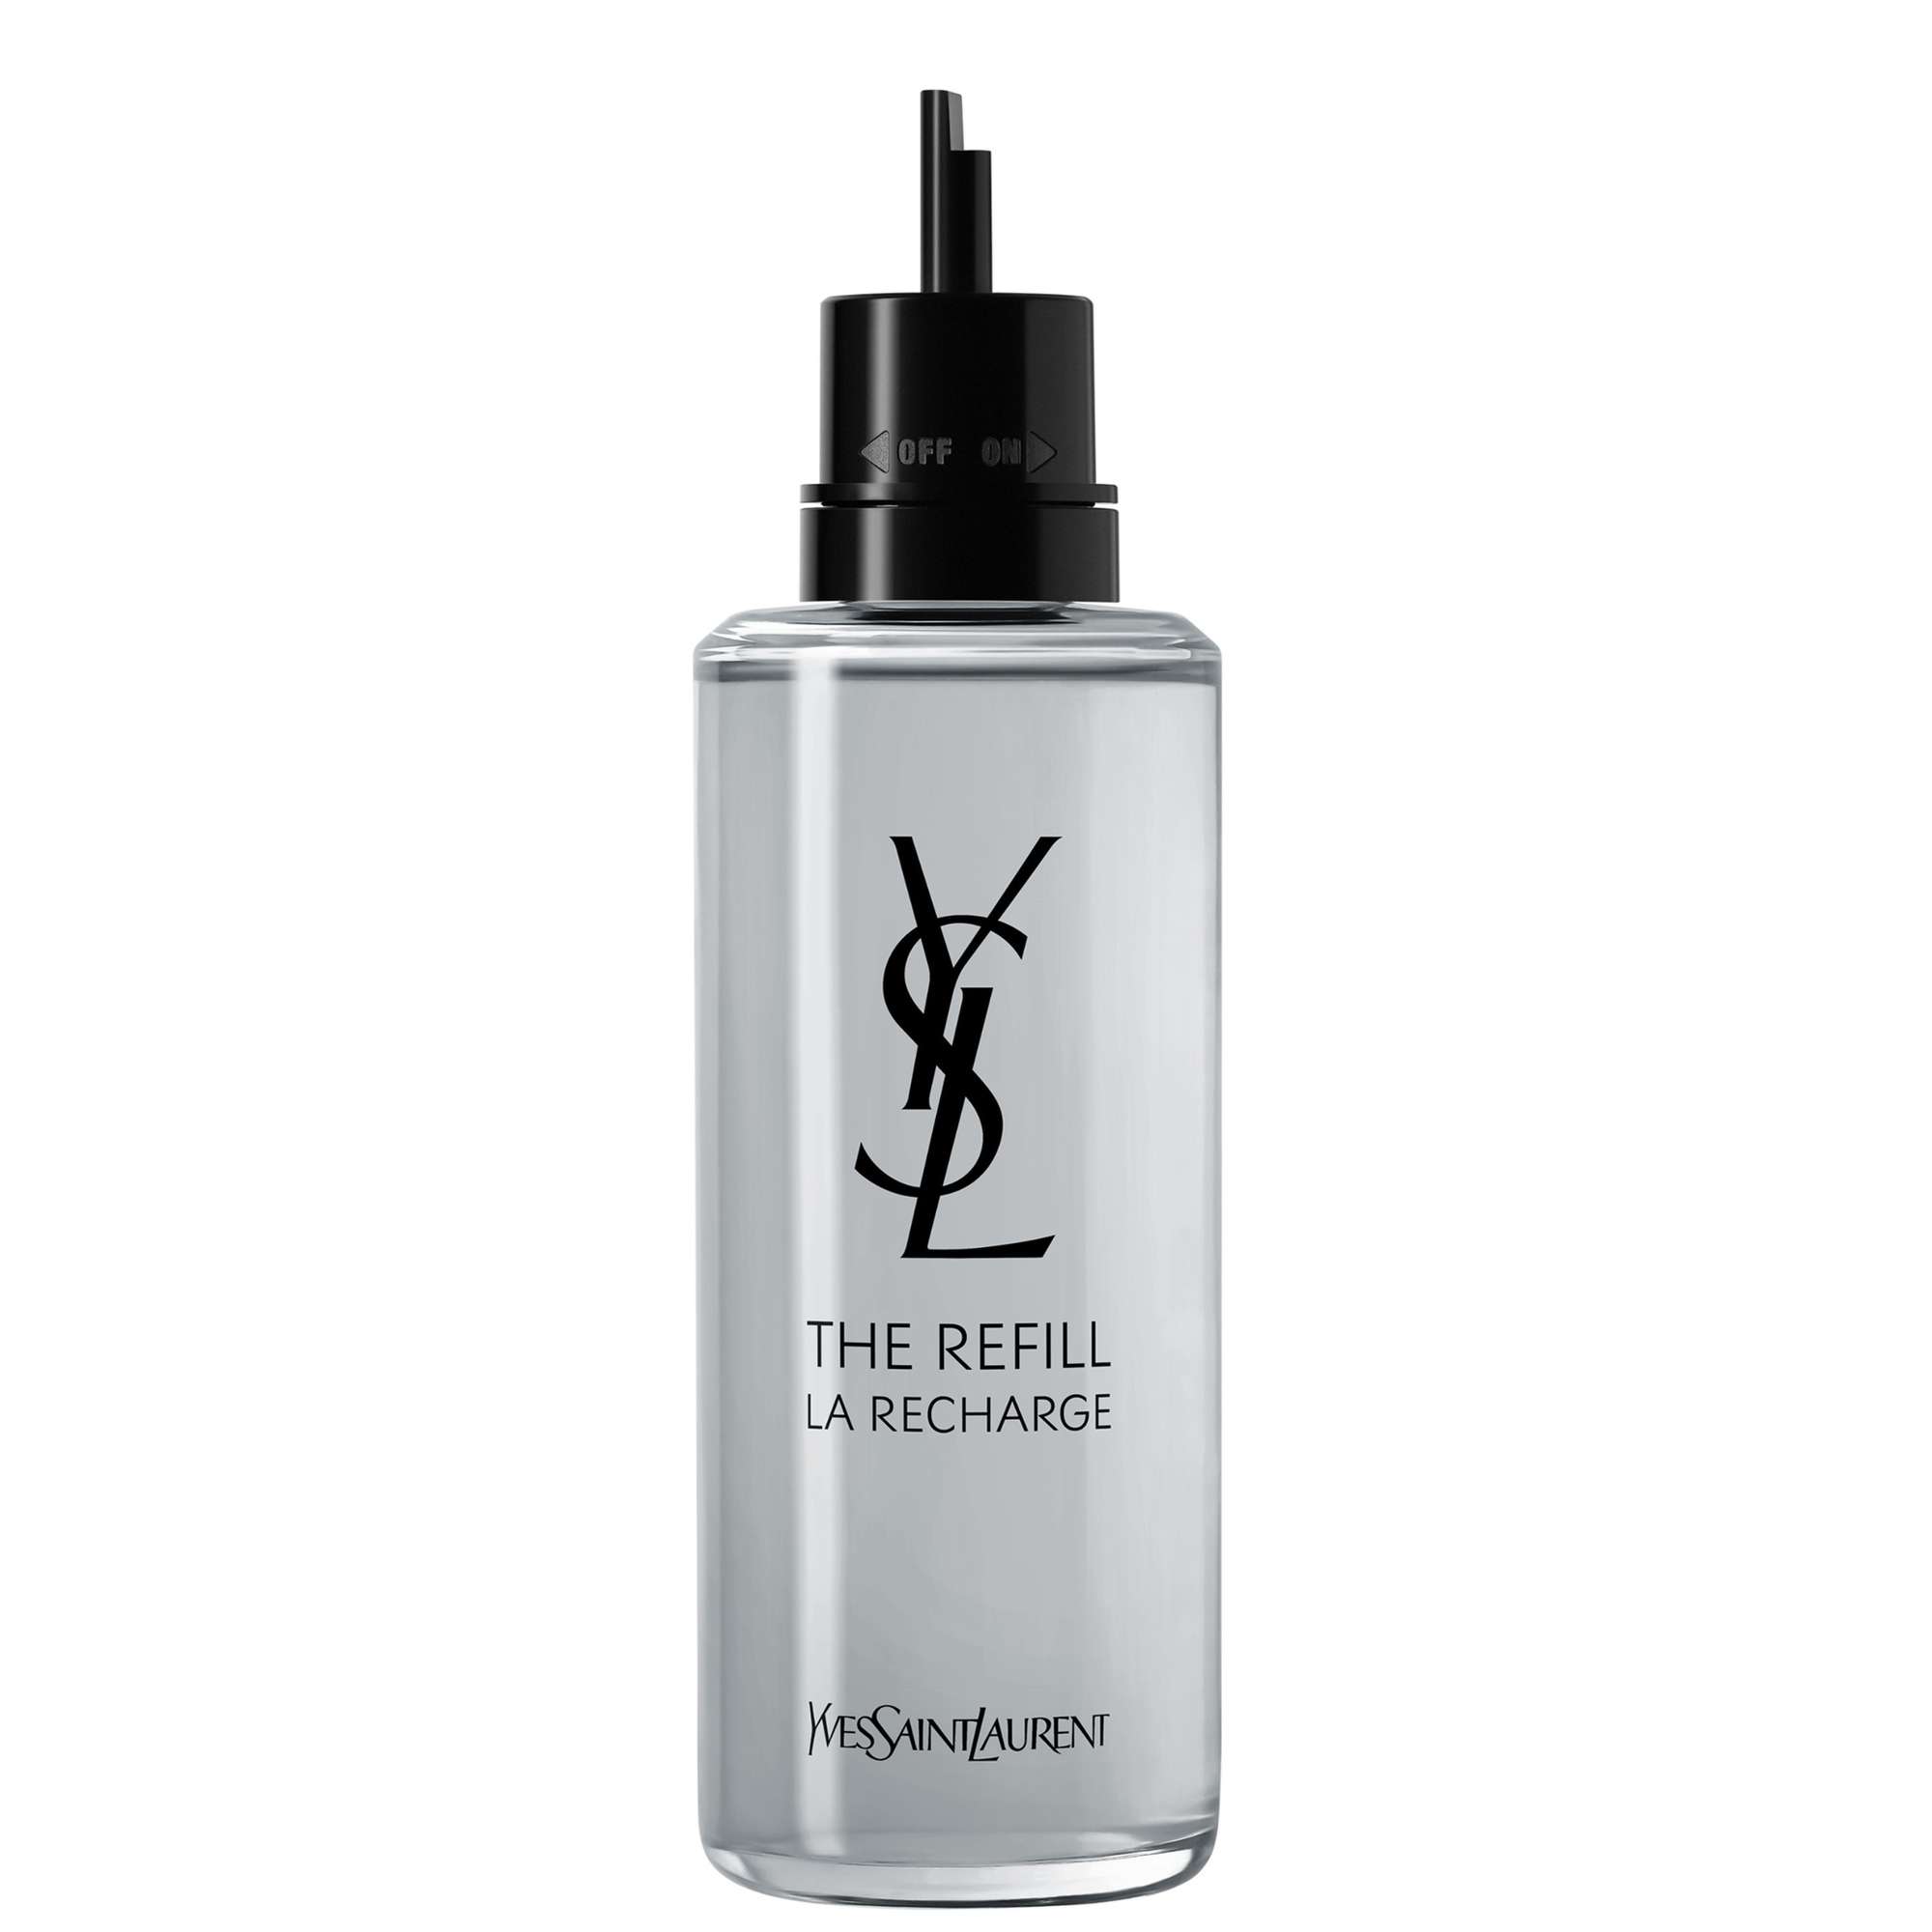 Photos - Women's Fragrance Yves Saint Laurent MYSLF Eau de Parfum Refill Bottle 150ml 